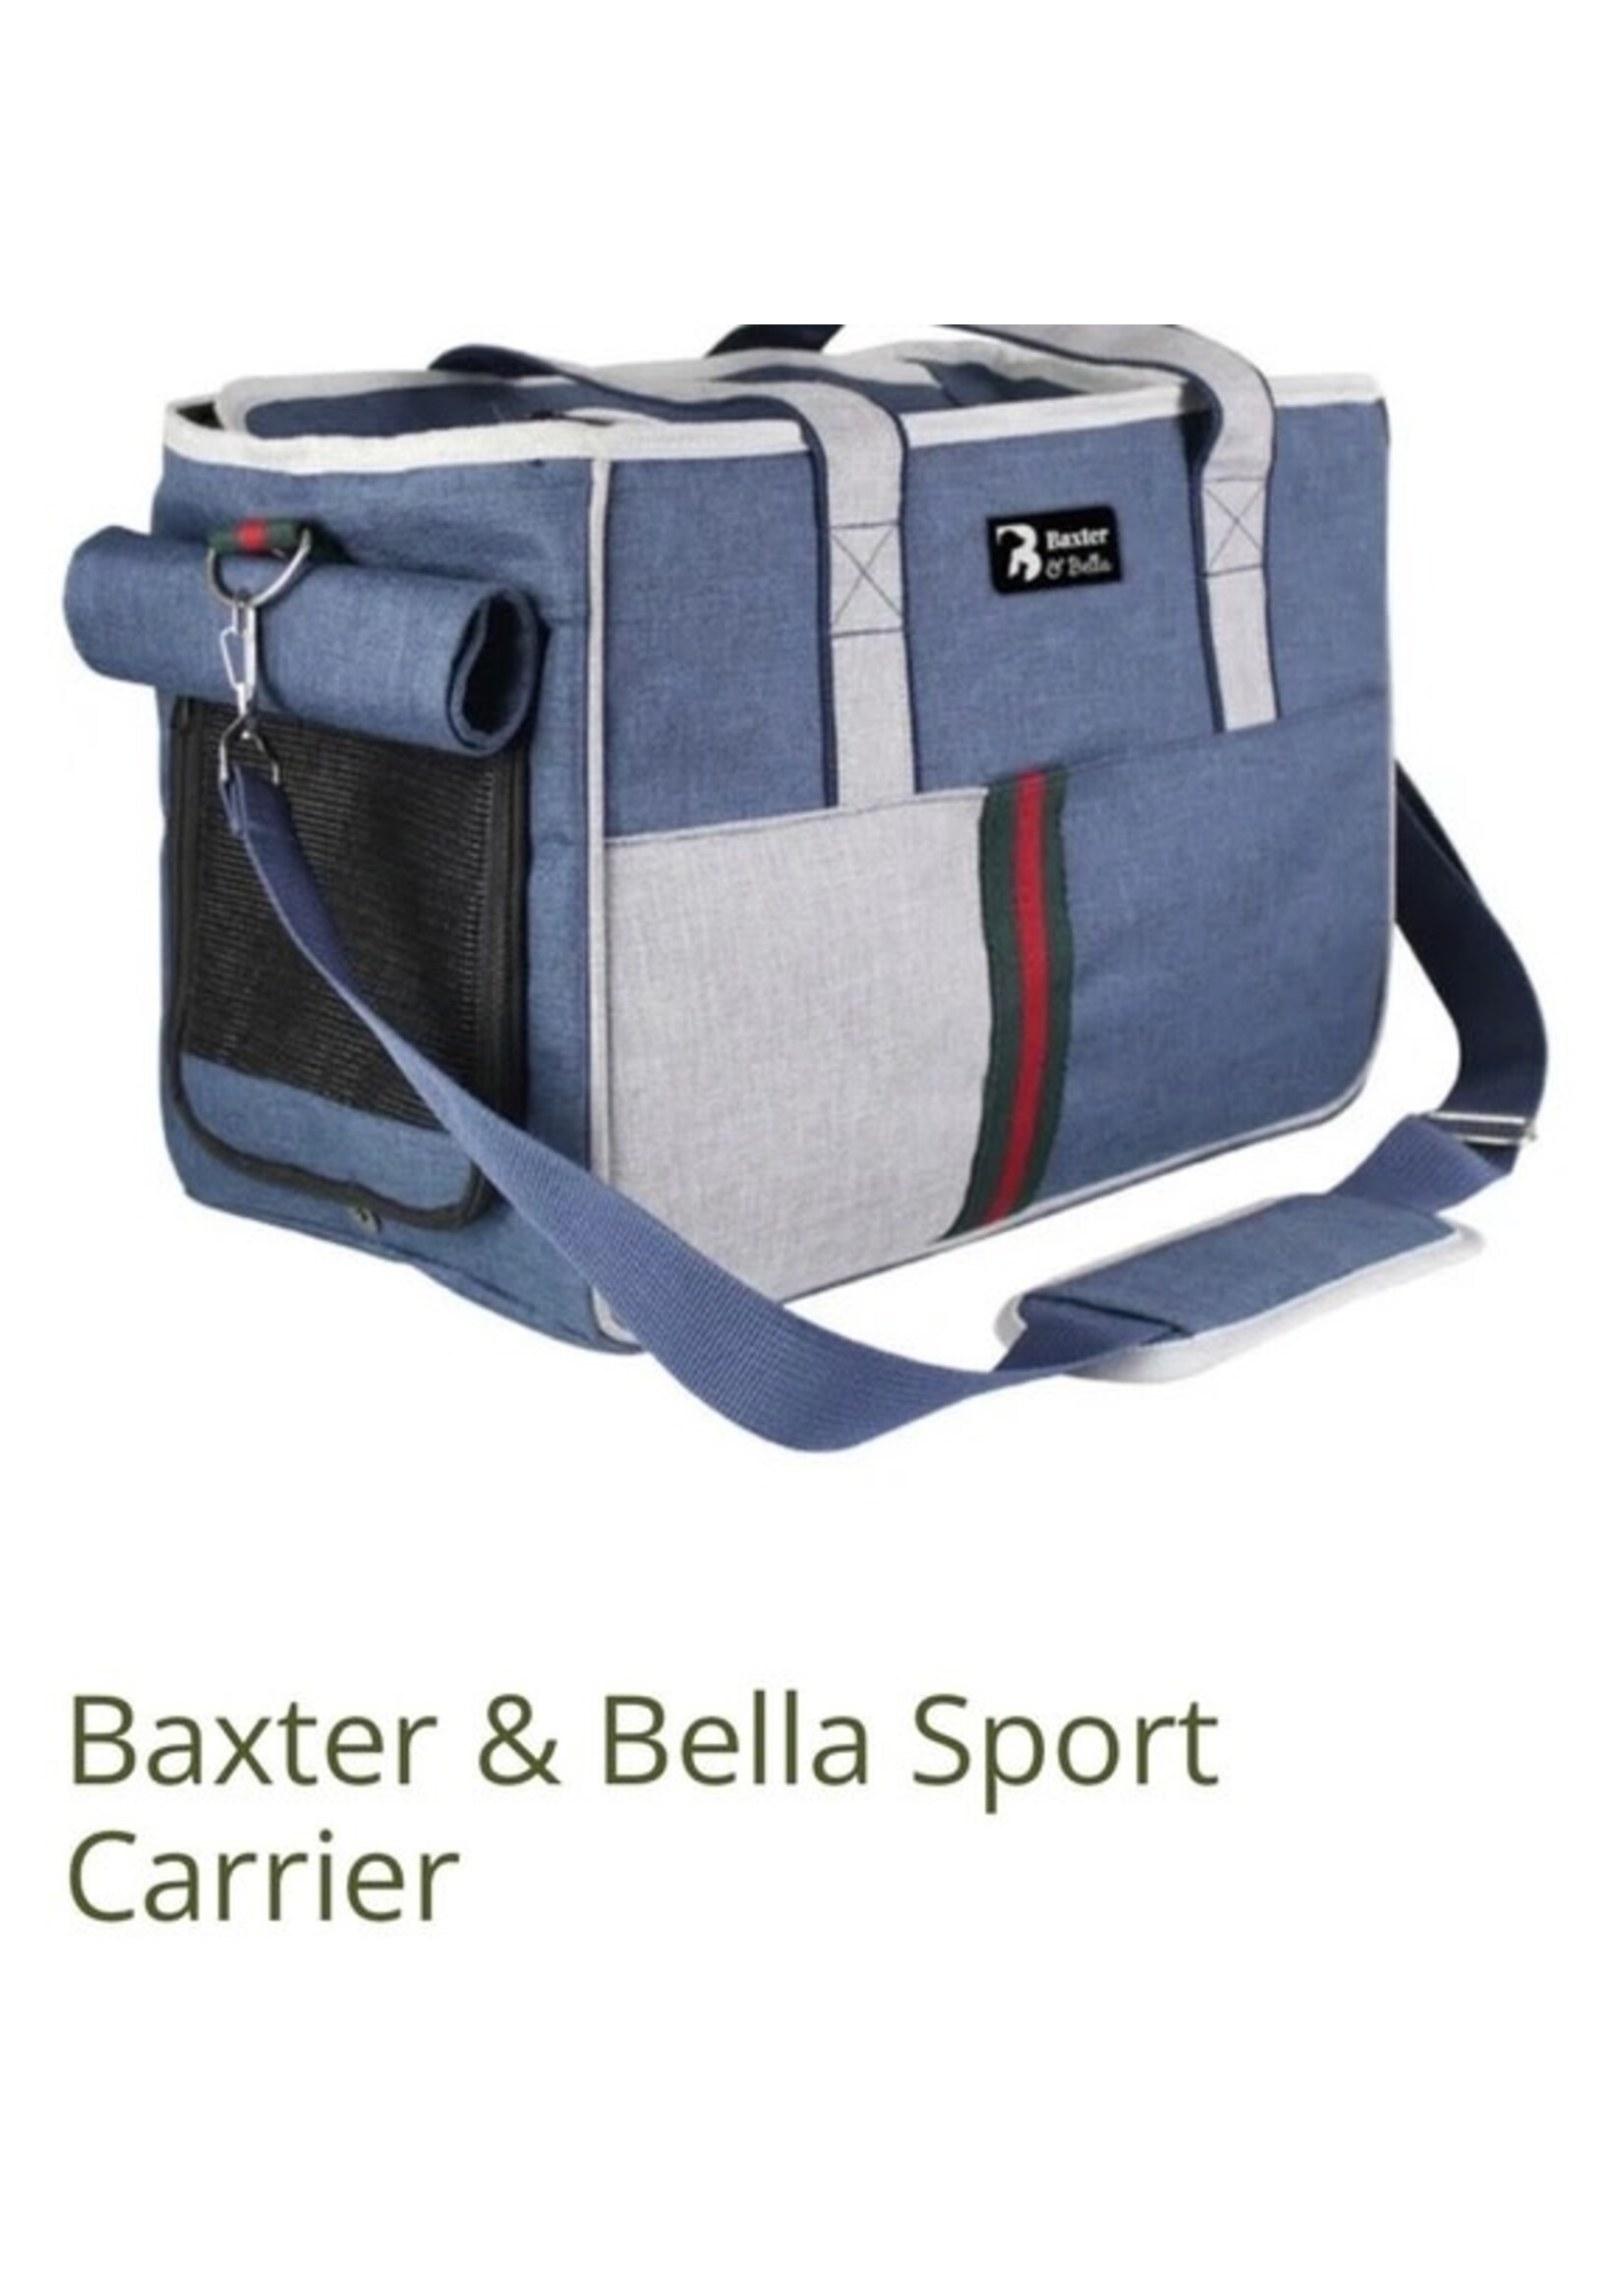 BAXTER & BELLA VOYAGE Baxter & Bella Sport Carrier 15.7x8.7x11in